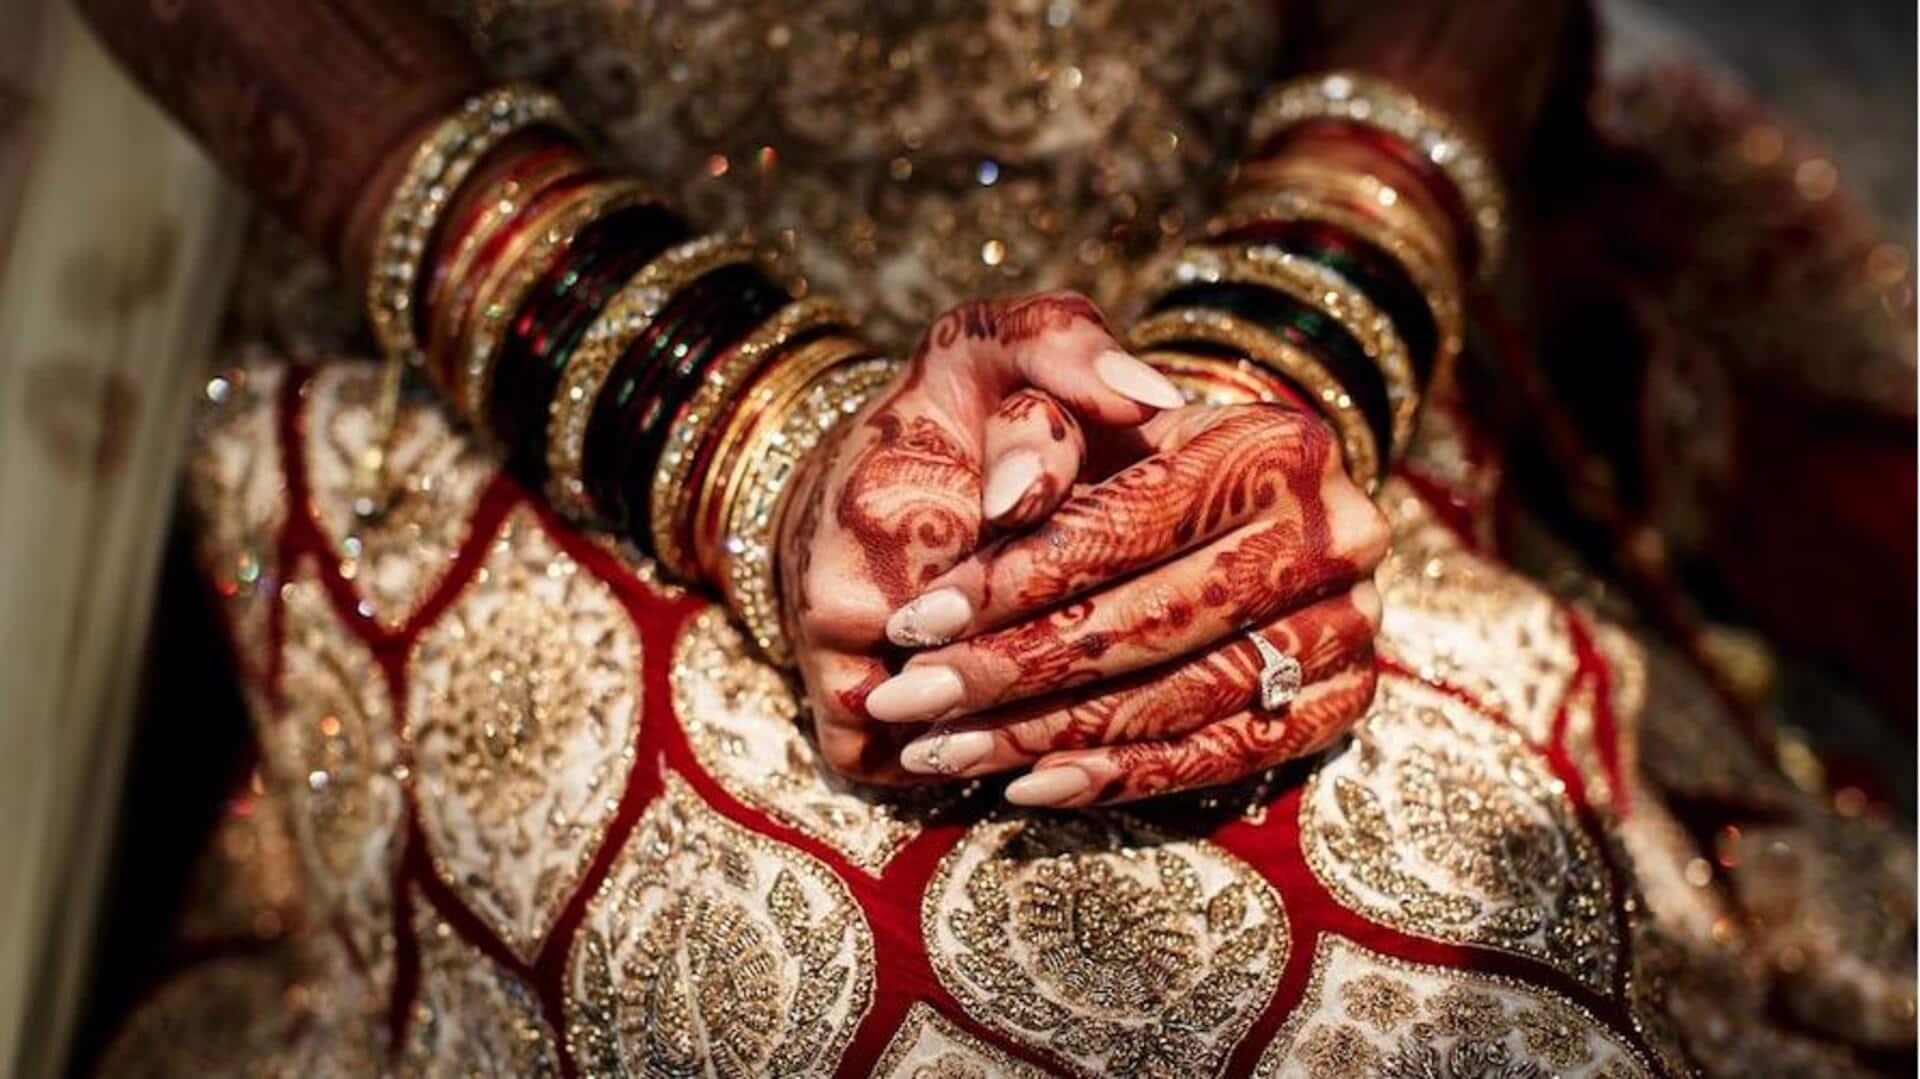 जयपुर: शादी के 7 दिन बाद फिल्म दिखाने ले गया पति, इंटरवल में फरार हुई पत्नी